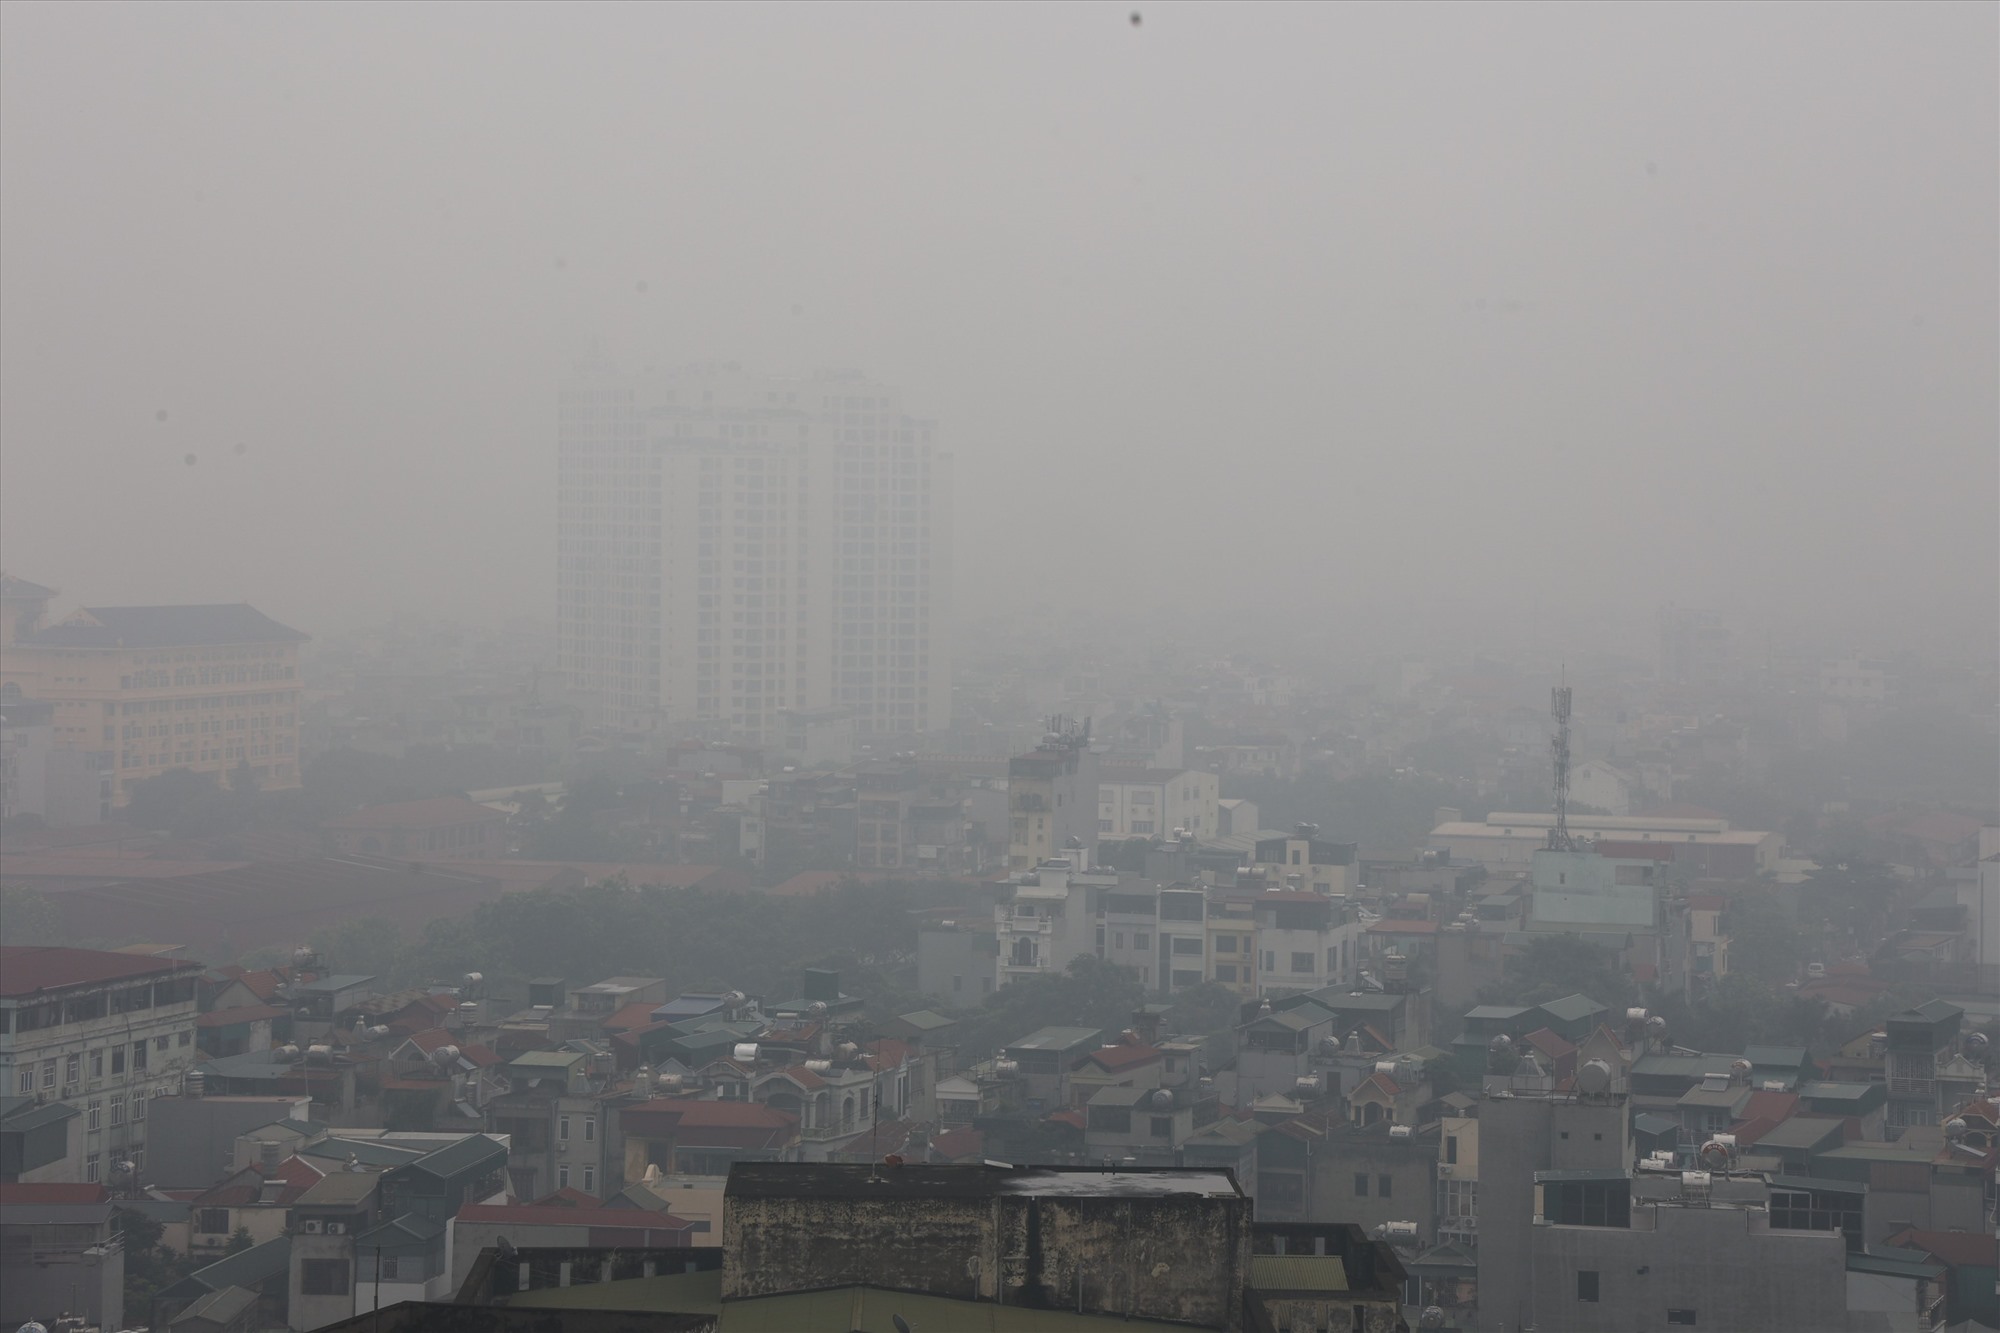 Sáng 11.8, thời tiết tại TP Hà Nội có mưa, nhiều nơi bị bao phủ bởi sương mù, có nơi sương mù dày đặc như tại quận Cầu Giấy, Hai Bà Trưng, Hoàng Mai,…